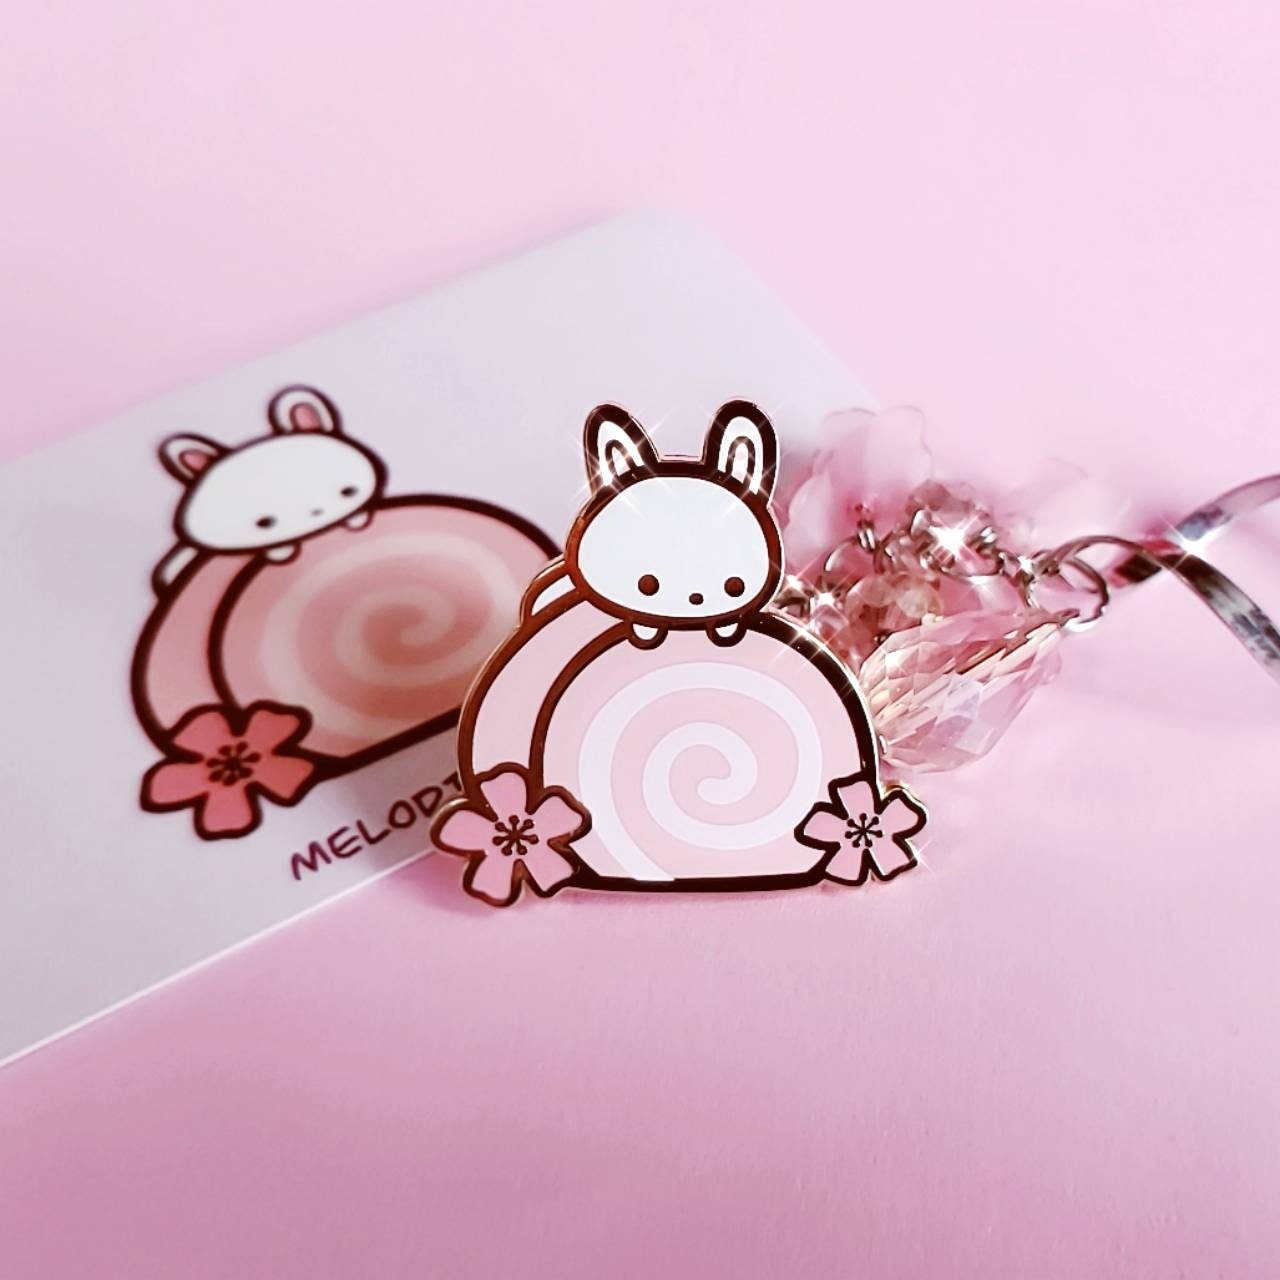 Cute Bunny on Swiss Roll Cake Enamel Pin Kawaii Cute Pink | Etsy